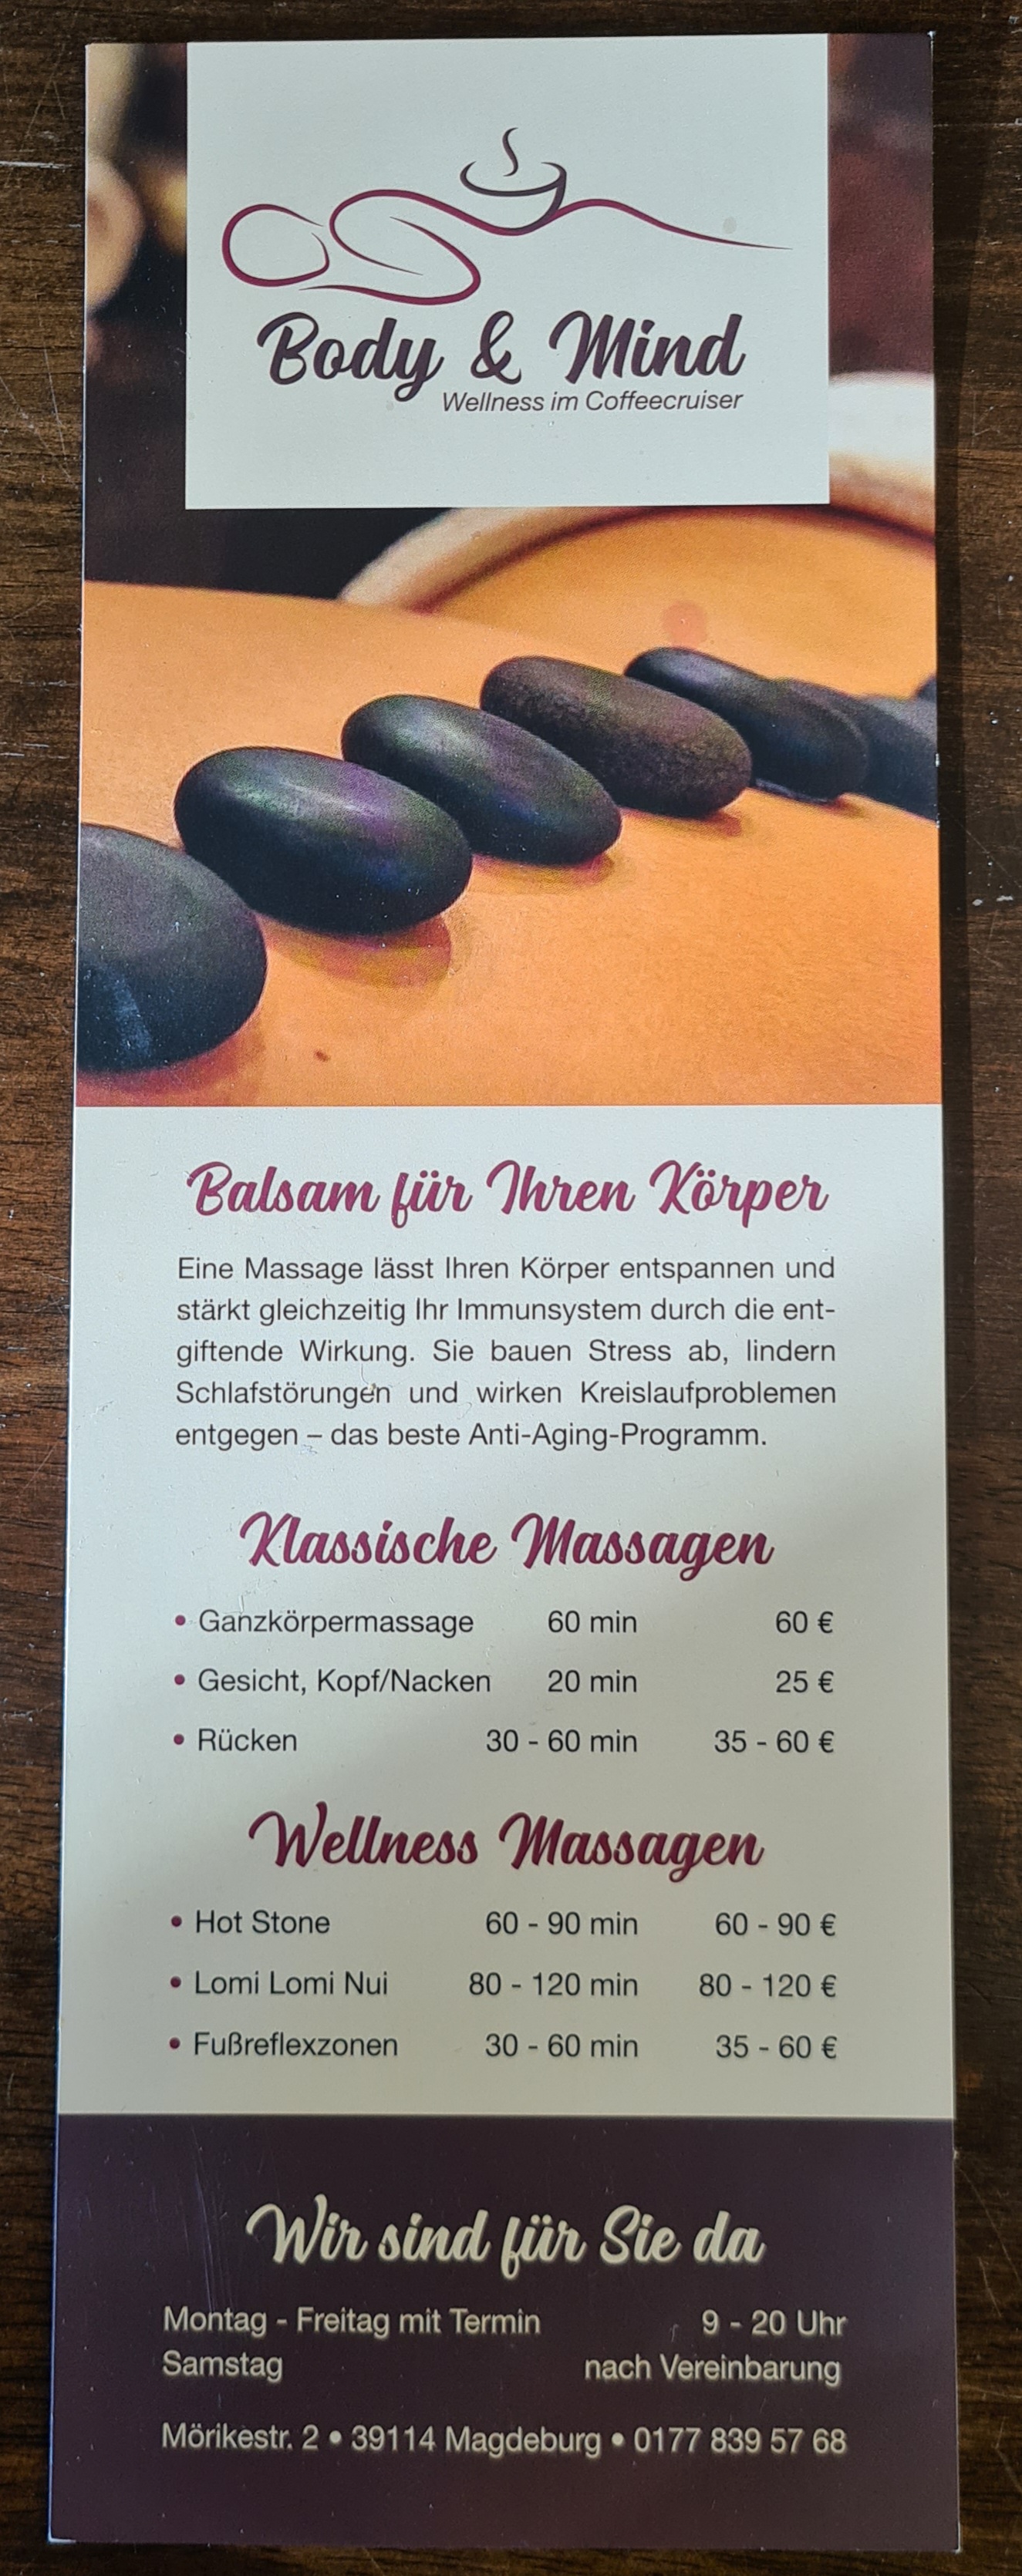 Massage Preise